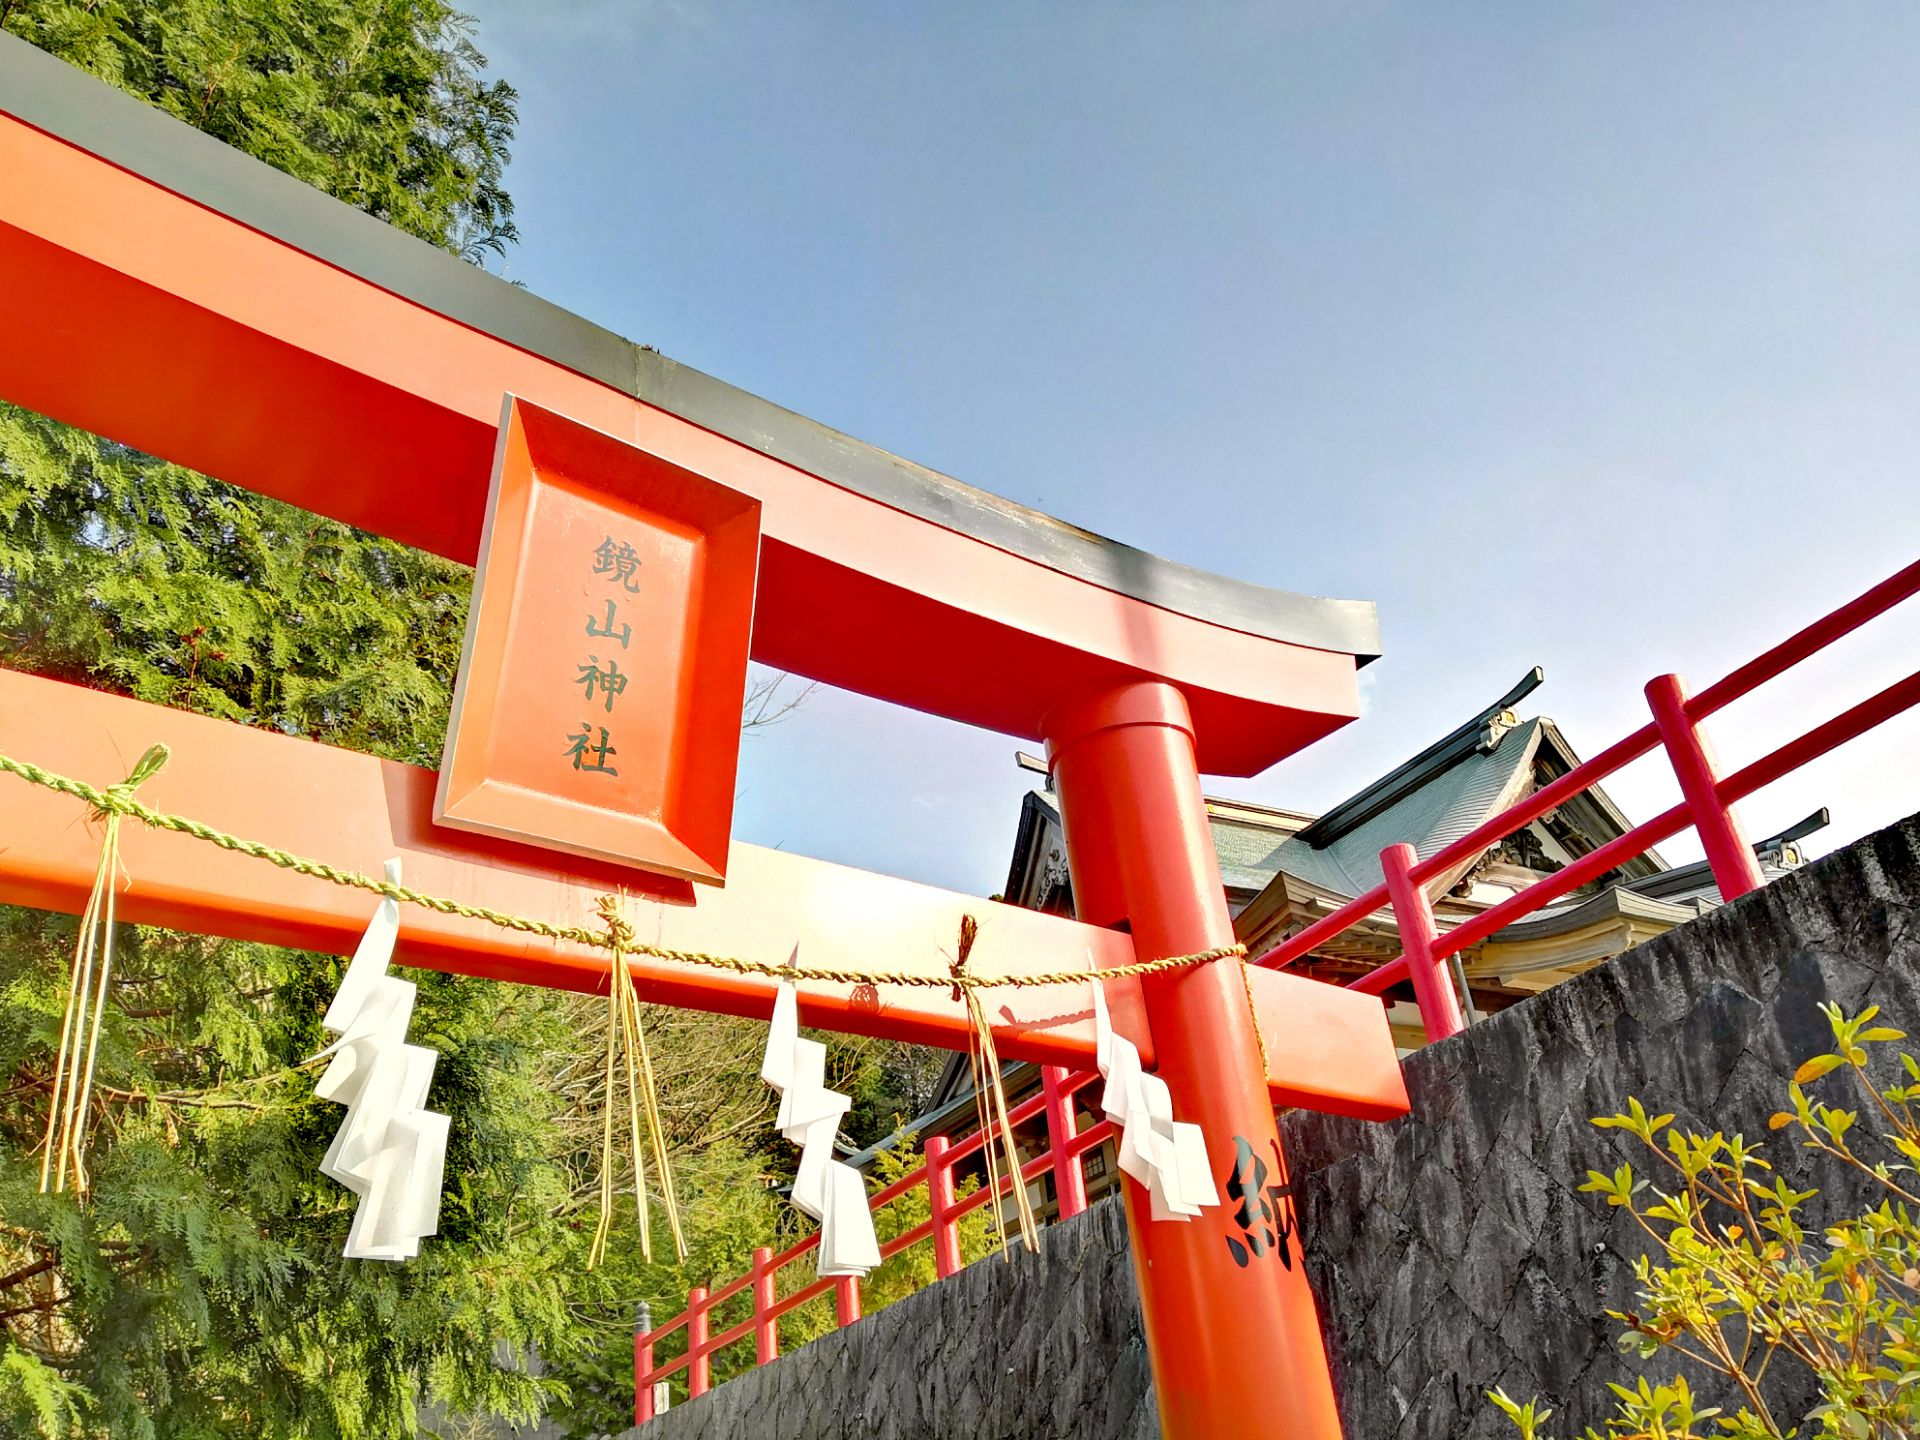 #超值得赏樱拍照的镜山稻荷神社  位于日本佐贺县唐津市镜山玄海国家公园山上，是一座上百年历史的木造神